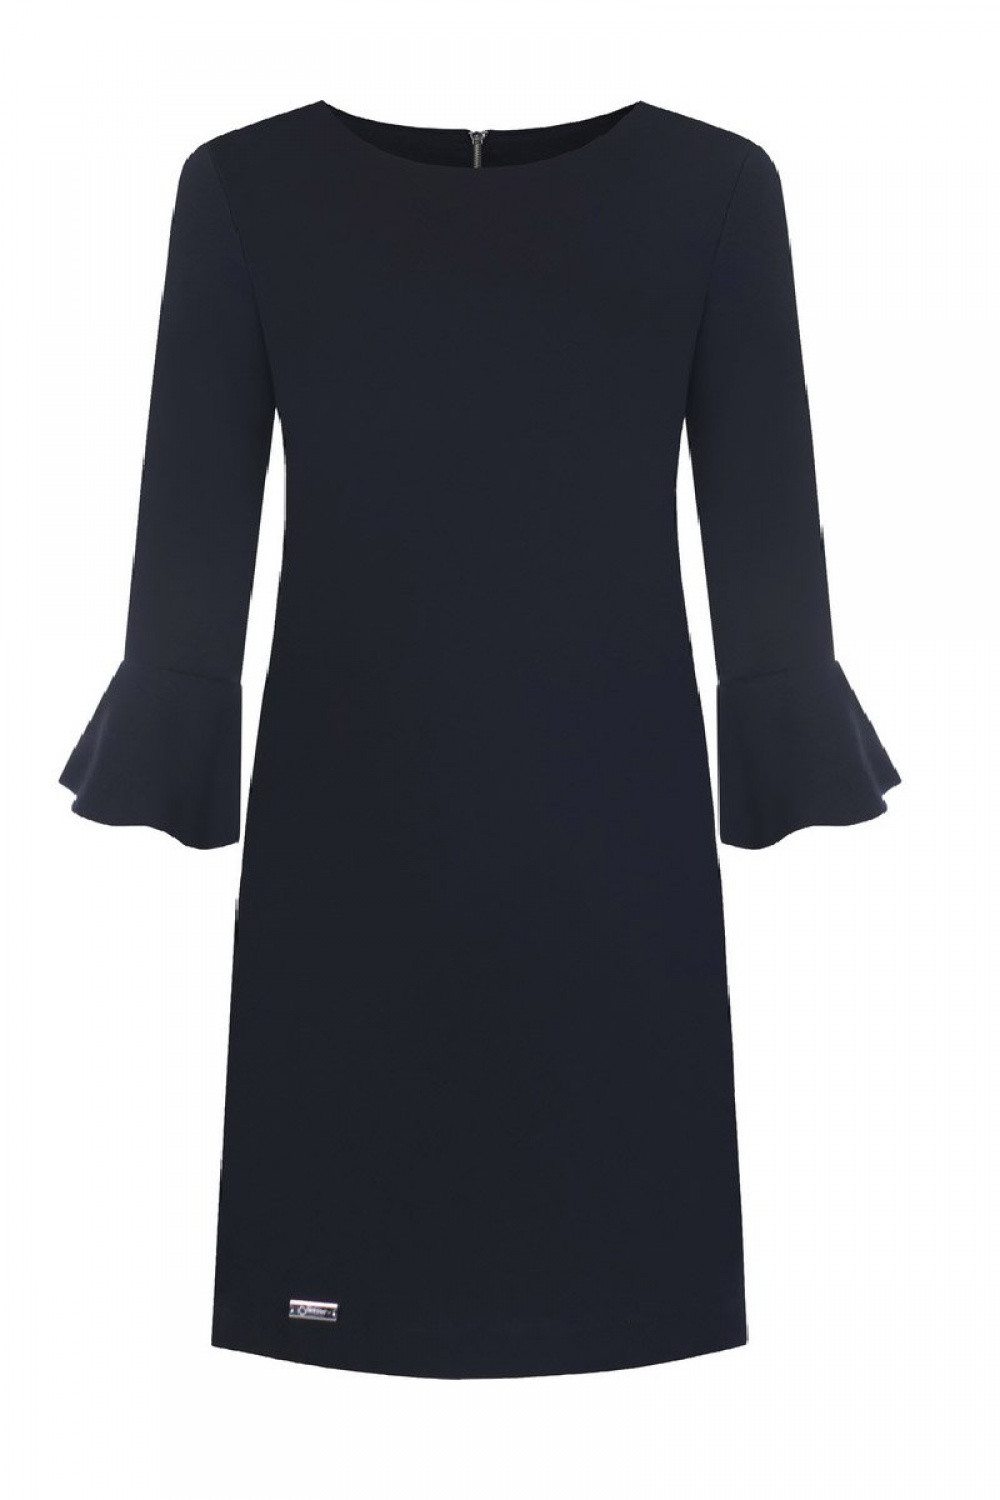 Dámské společenské šaty Erin model 108527 Černá - Jersa černá 44